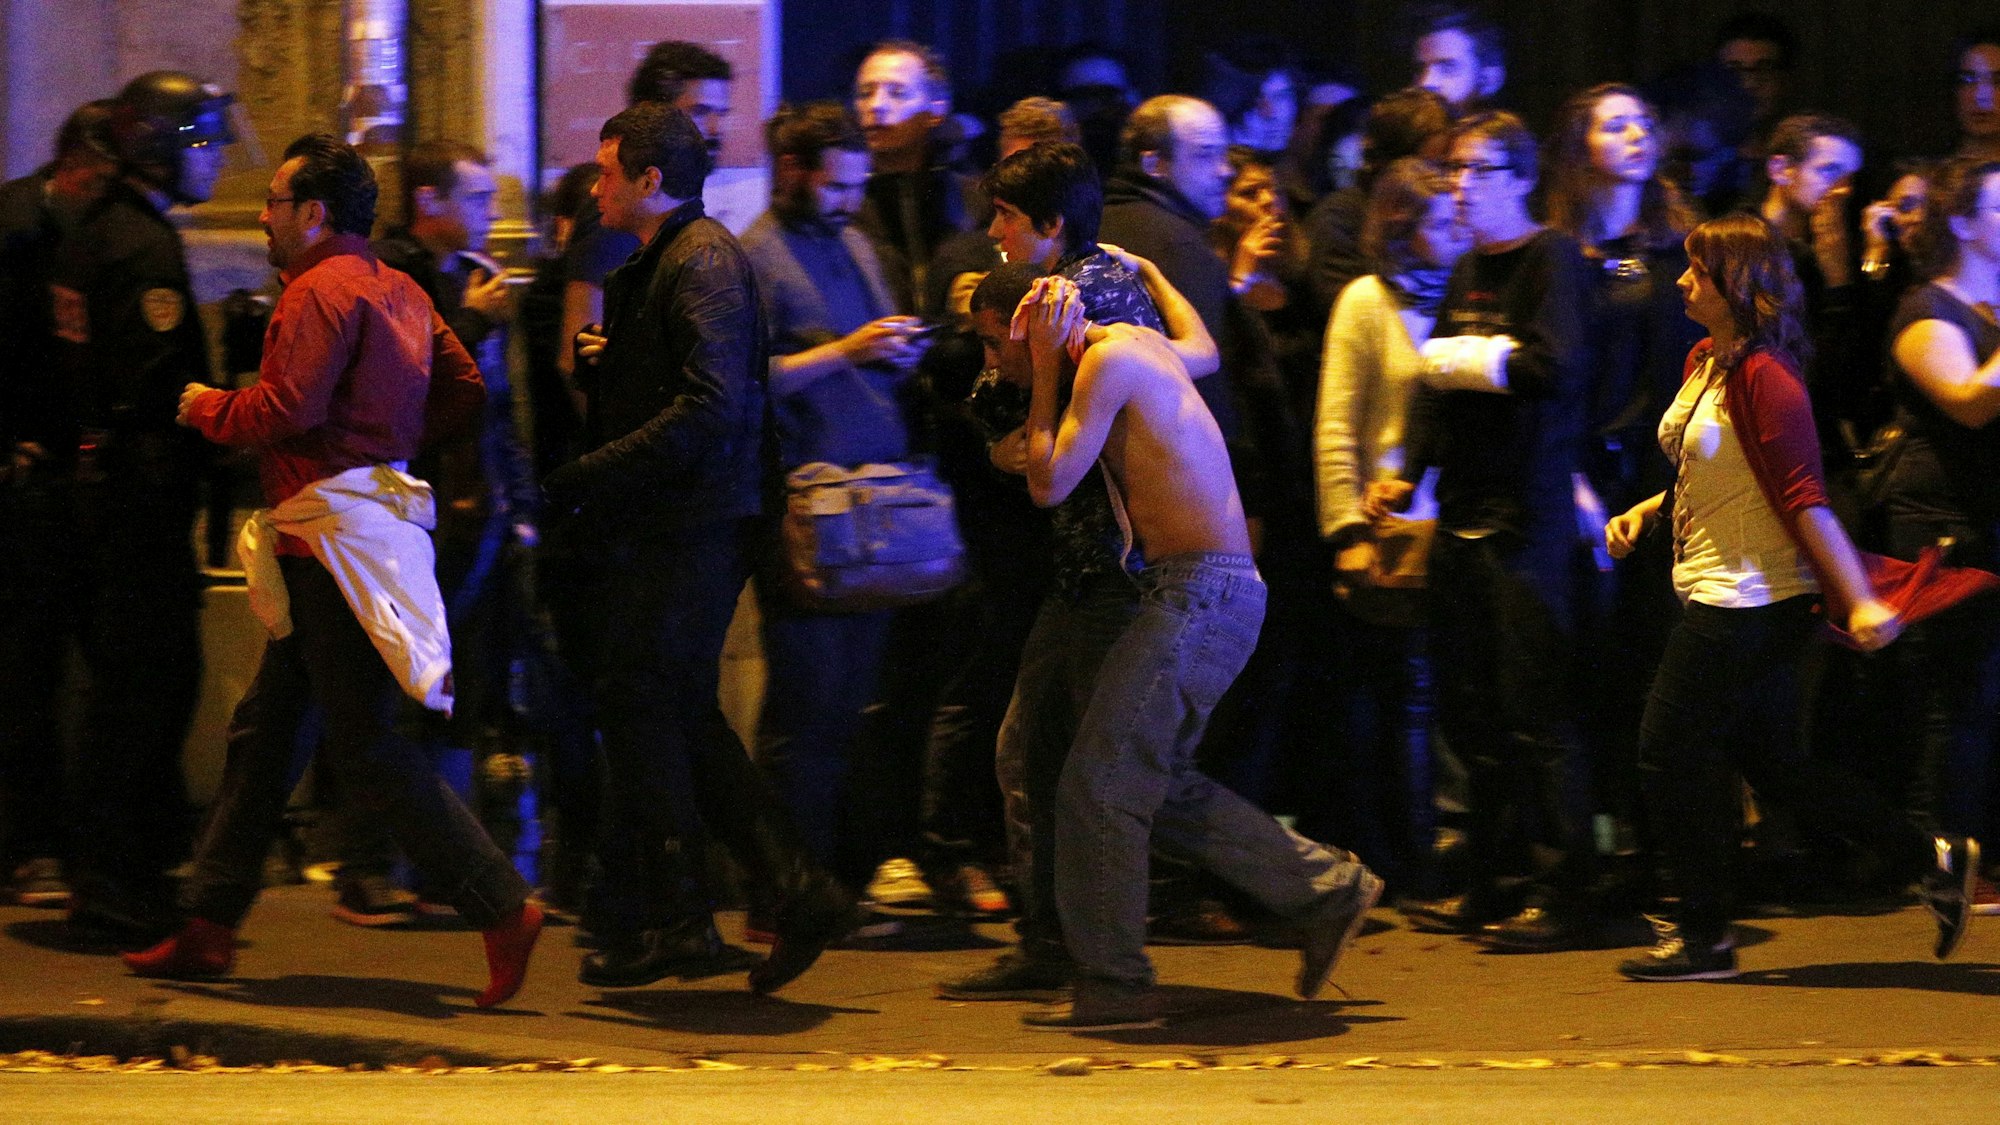 Paris in der Nacht vom 13. auf den 14. November 2015: Islamistischer Terror regiert die Stadt. 130 Menschen sterben, ein Großteil davon in der Konzerthalle Bataclan. Das Bild zeigt die damalige Situation mit Verletzten.